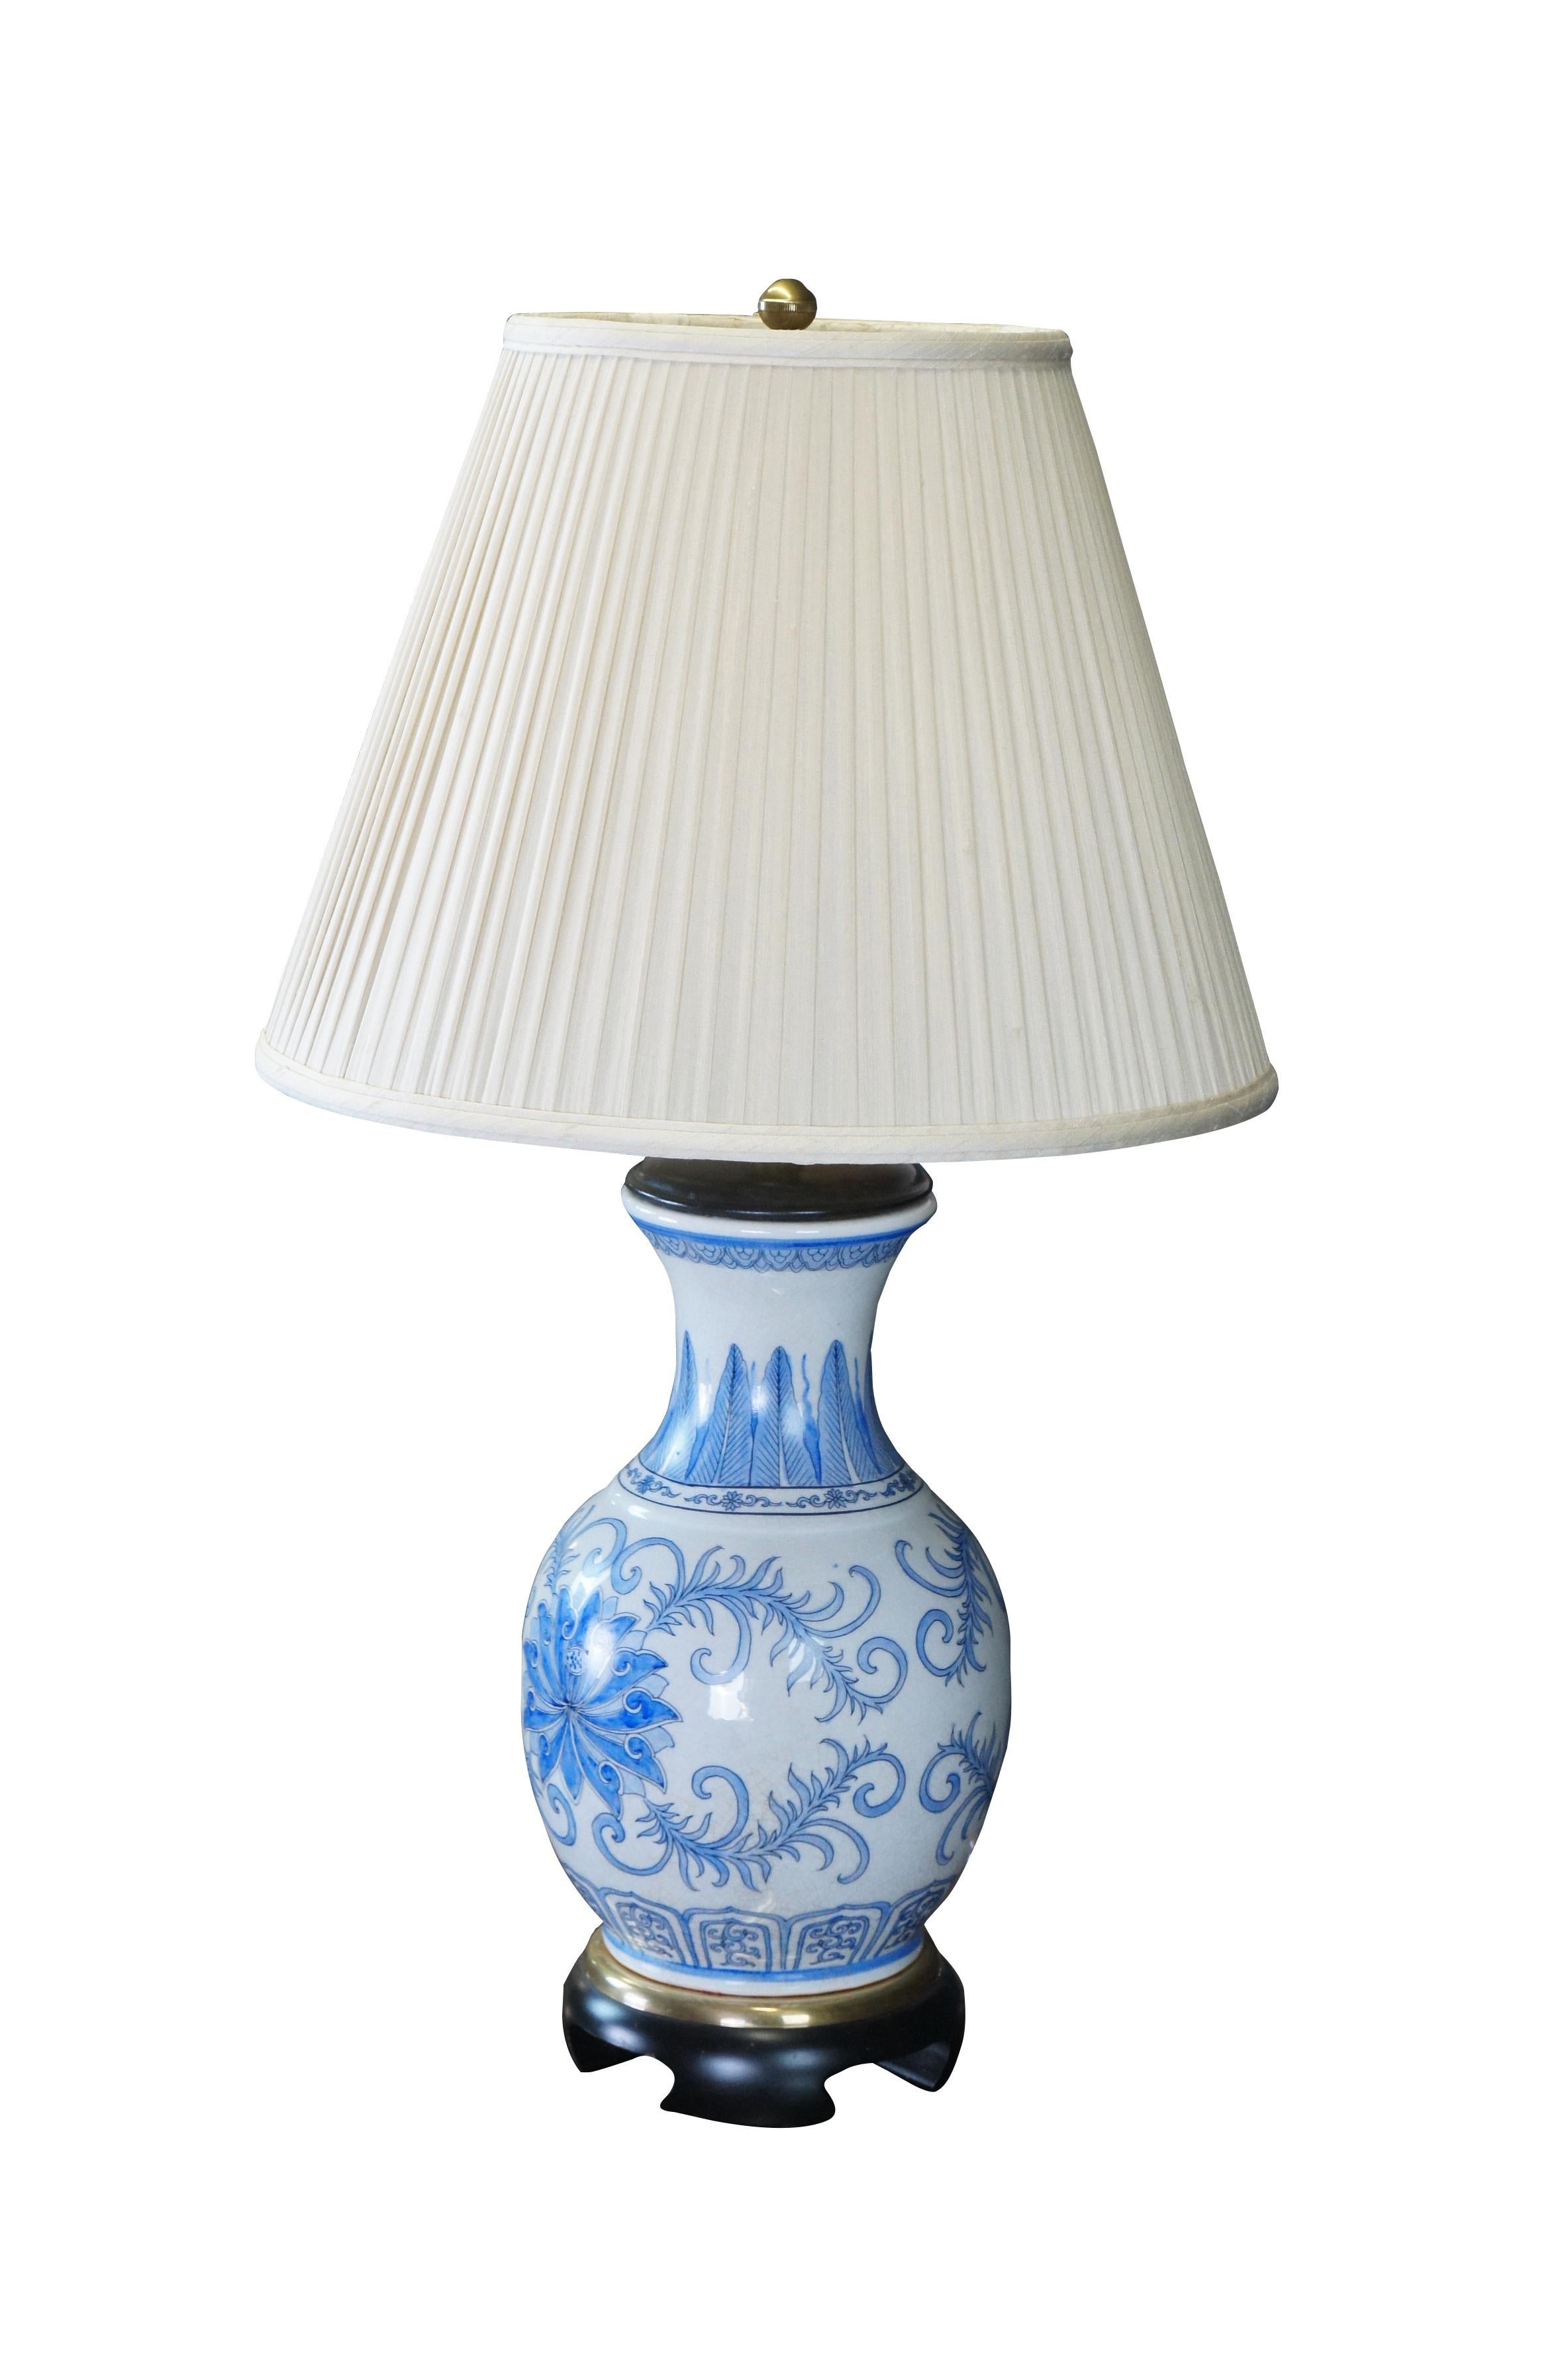 Vintage Frederick Cooper Tischlampe aus blauem und weißem Porzellan mit einer Vase / Urne / einem Gefäß mit Blumen im Chinoiserie-Design 

Abmessungen:
31